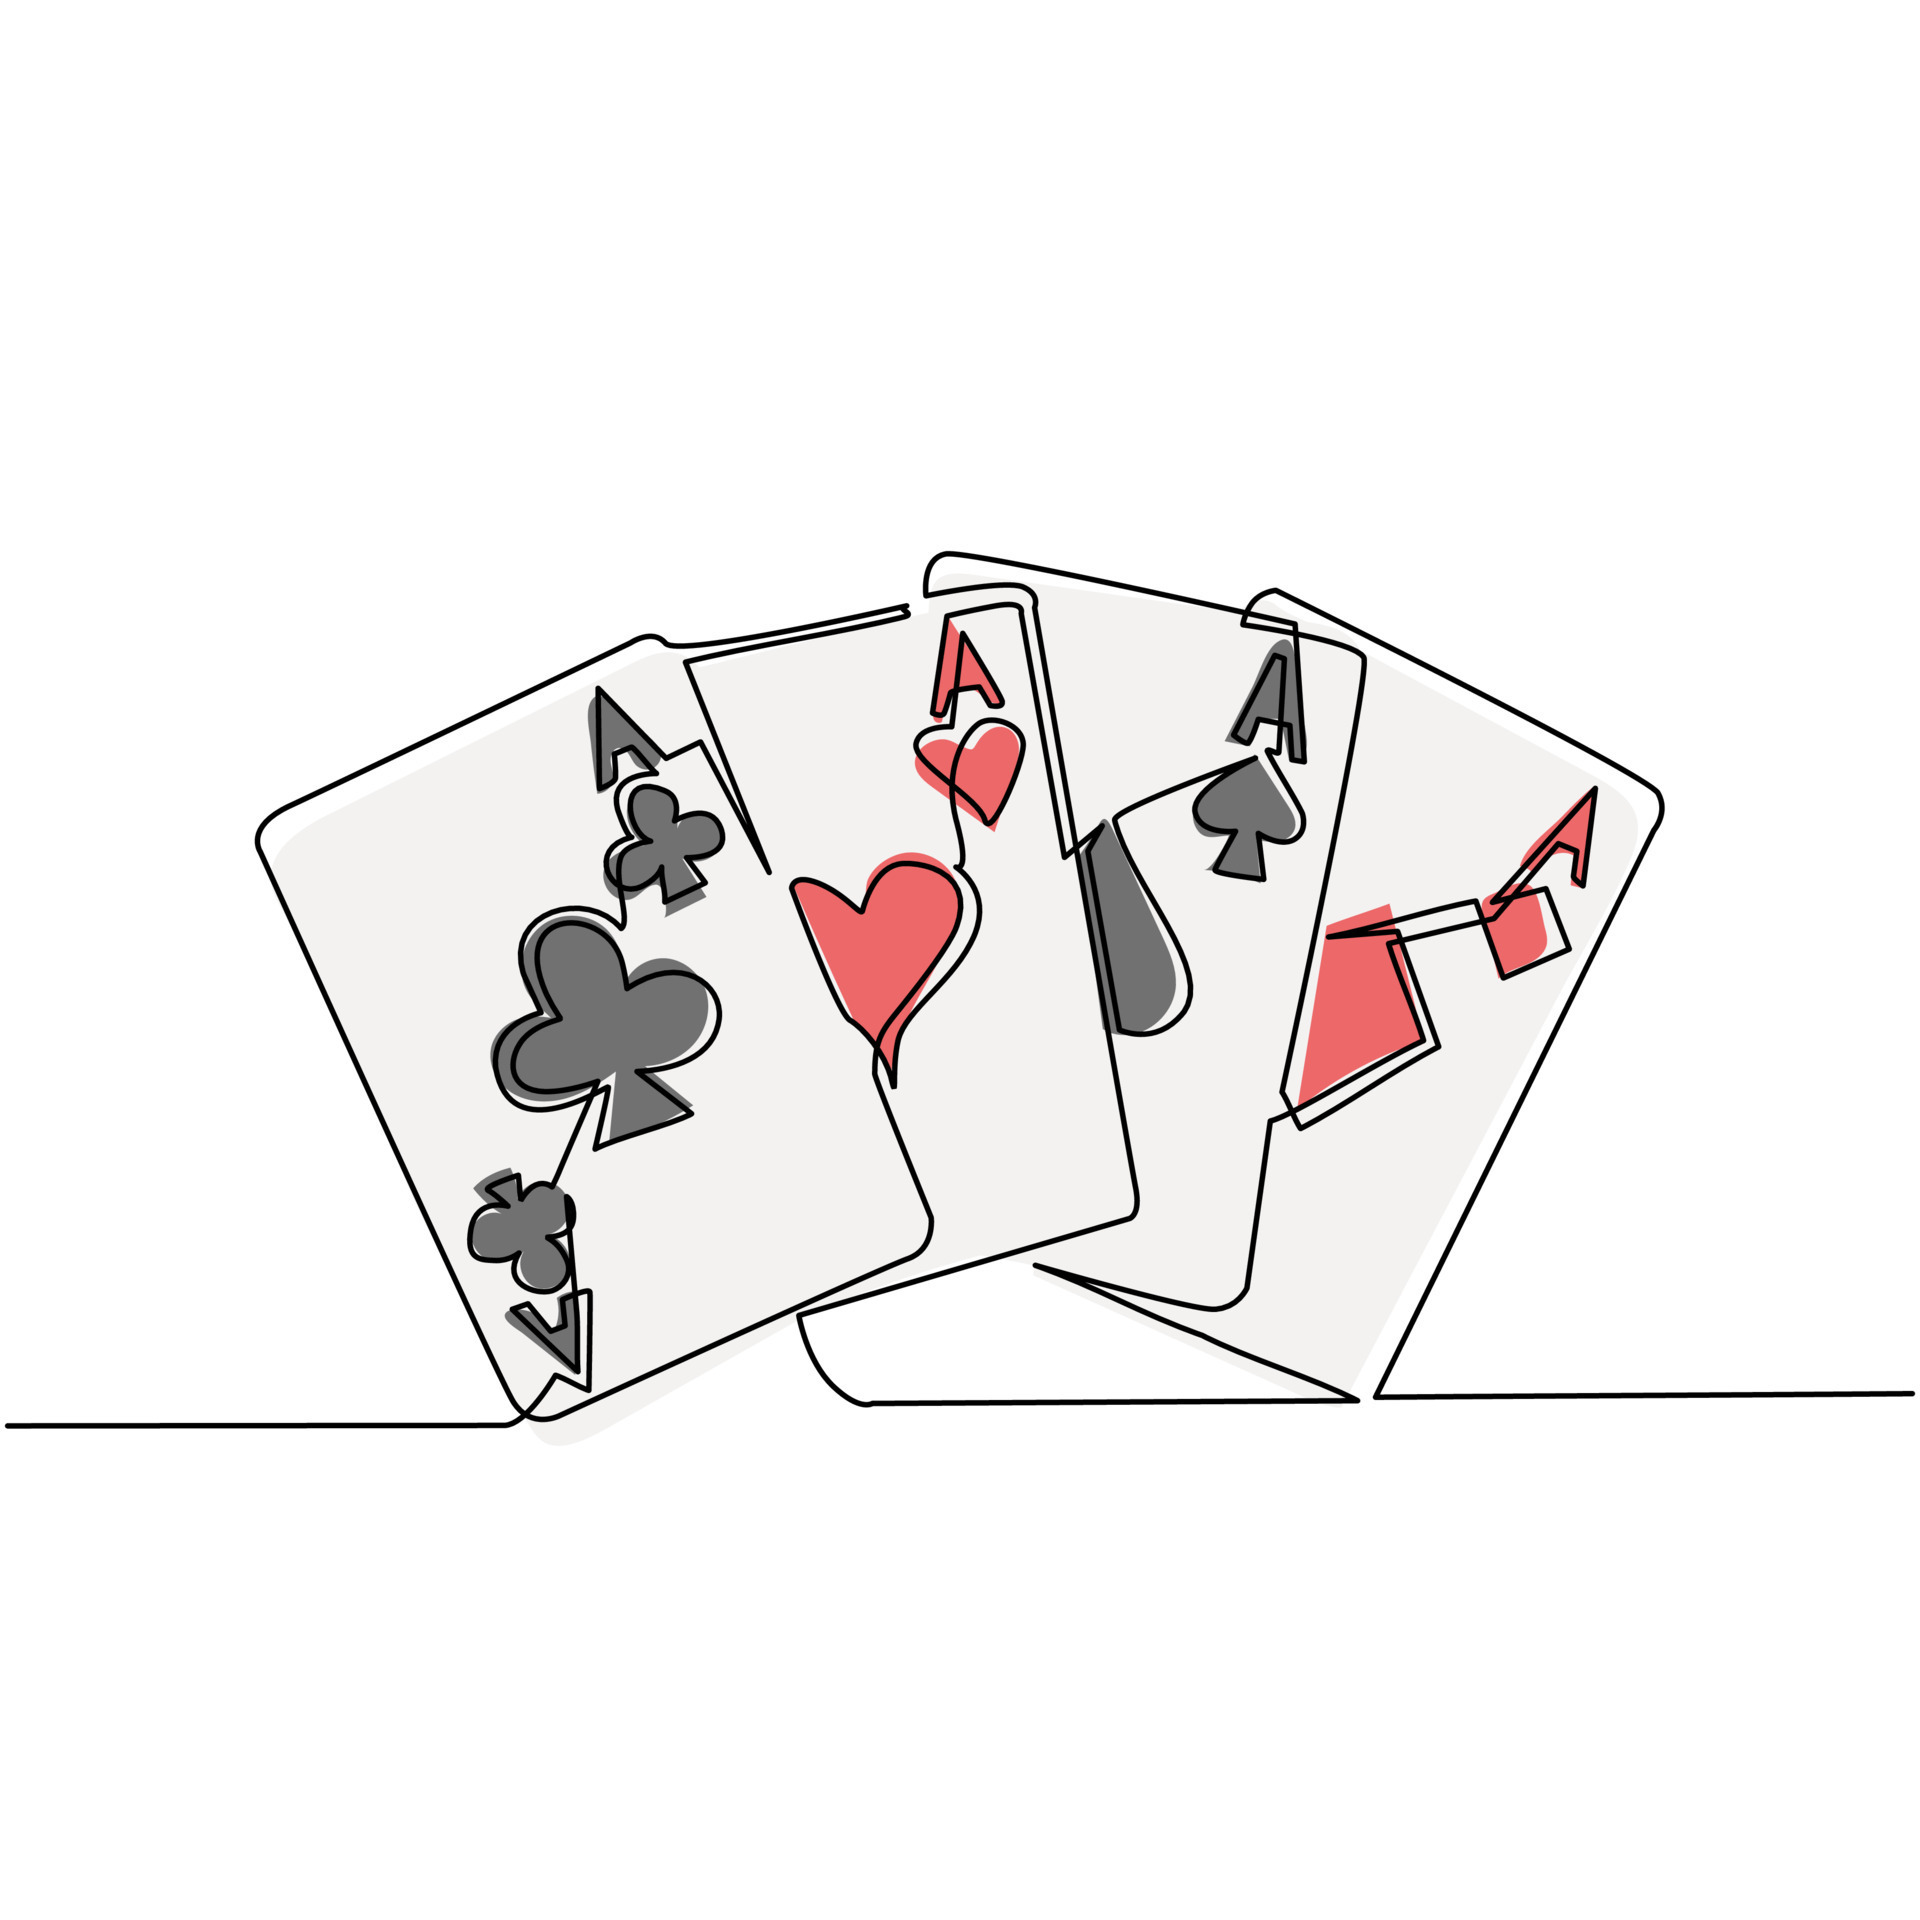 Conjunto de quatro ases de baralho para jogar pôquer e cassino em fundo  branco. espadas, ouros, clubes e copas.